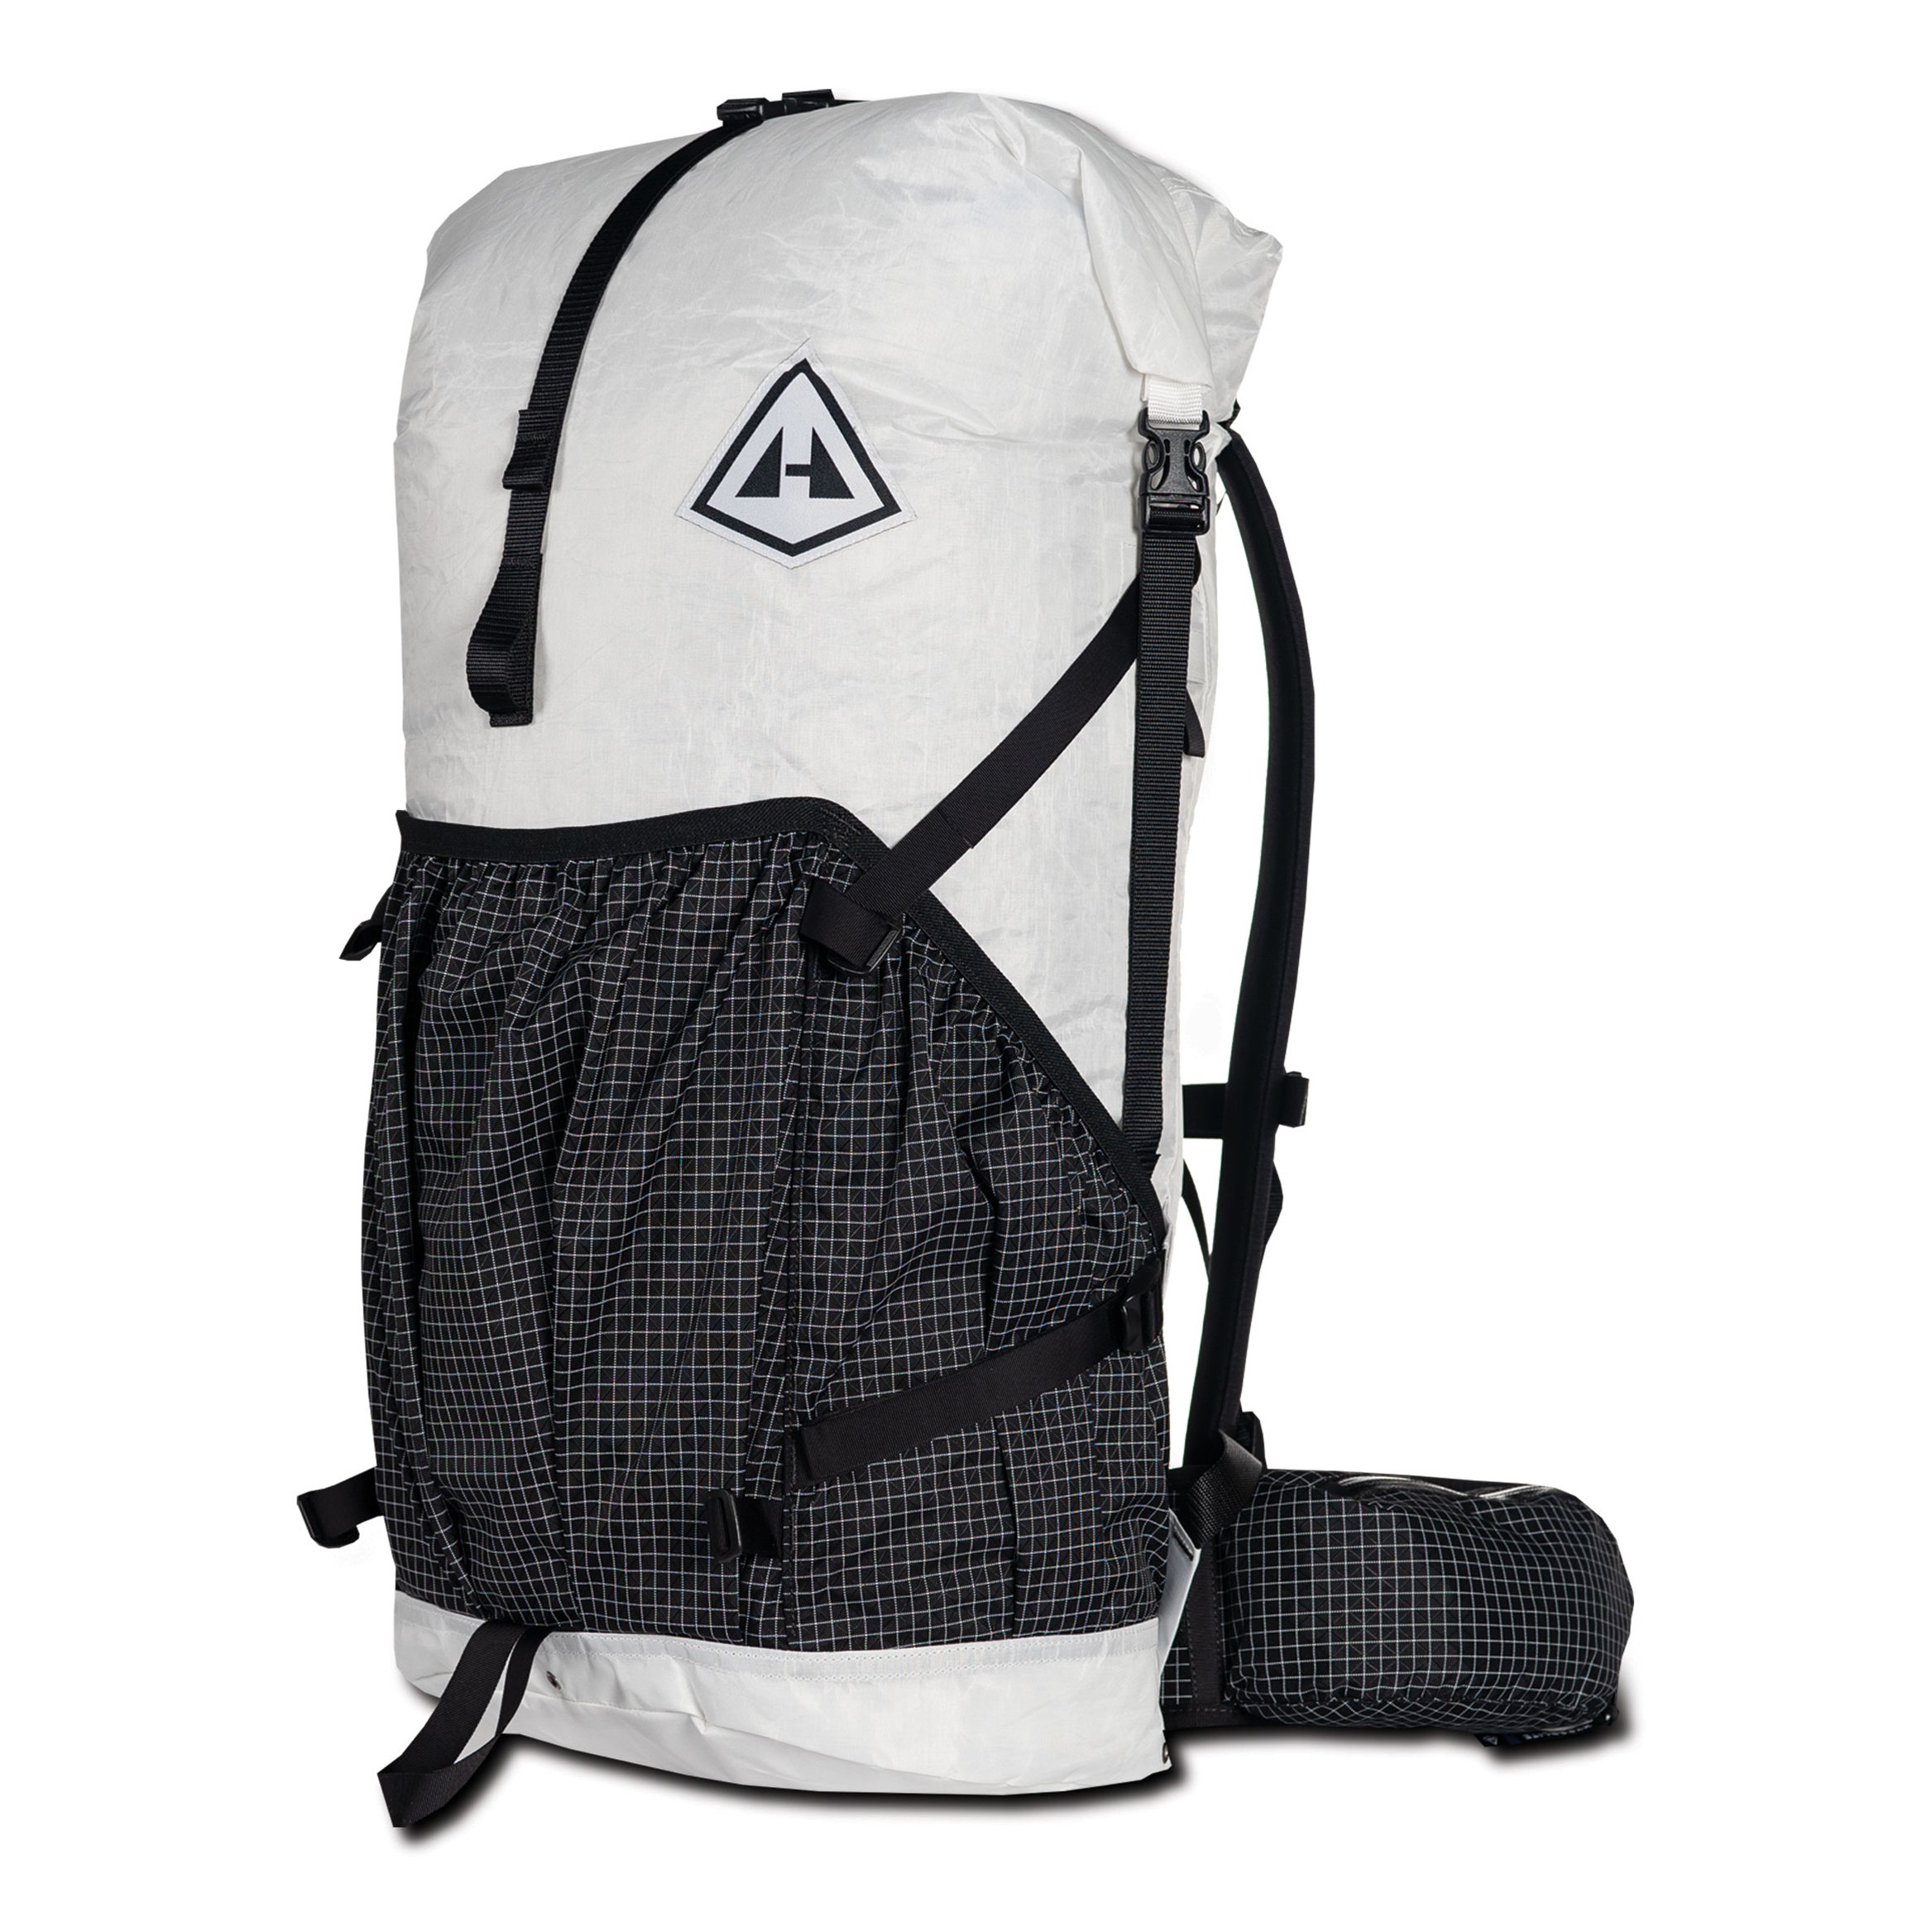 Hyperlite Mountain Gear Southwest 2400 Backpack - White